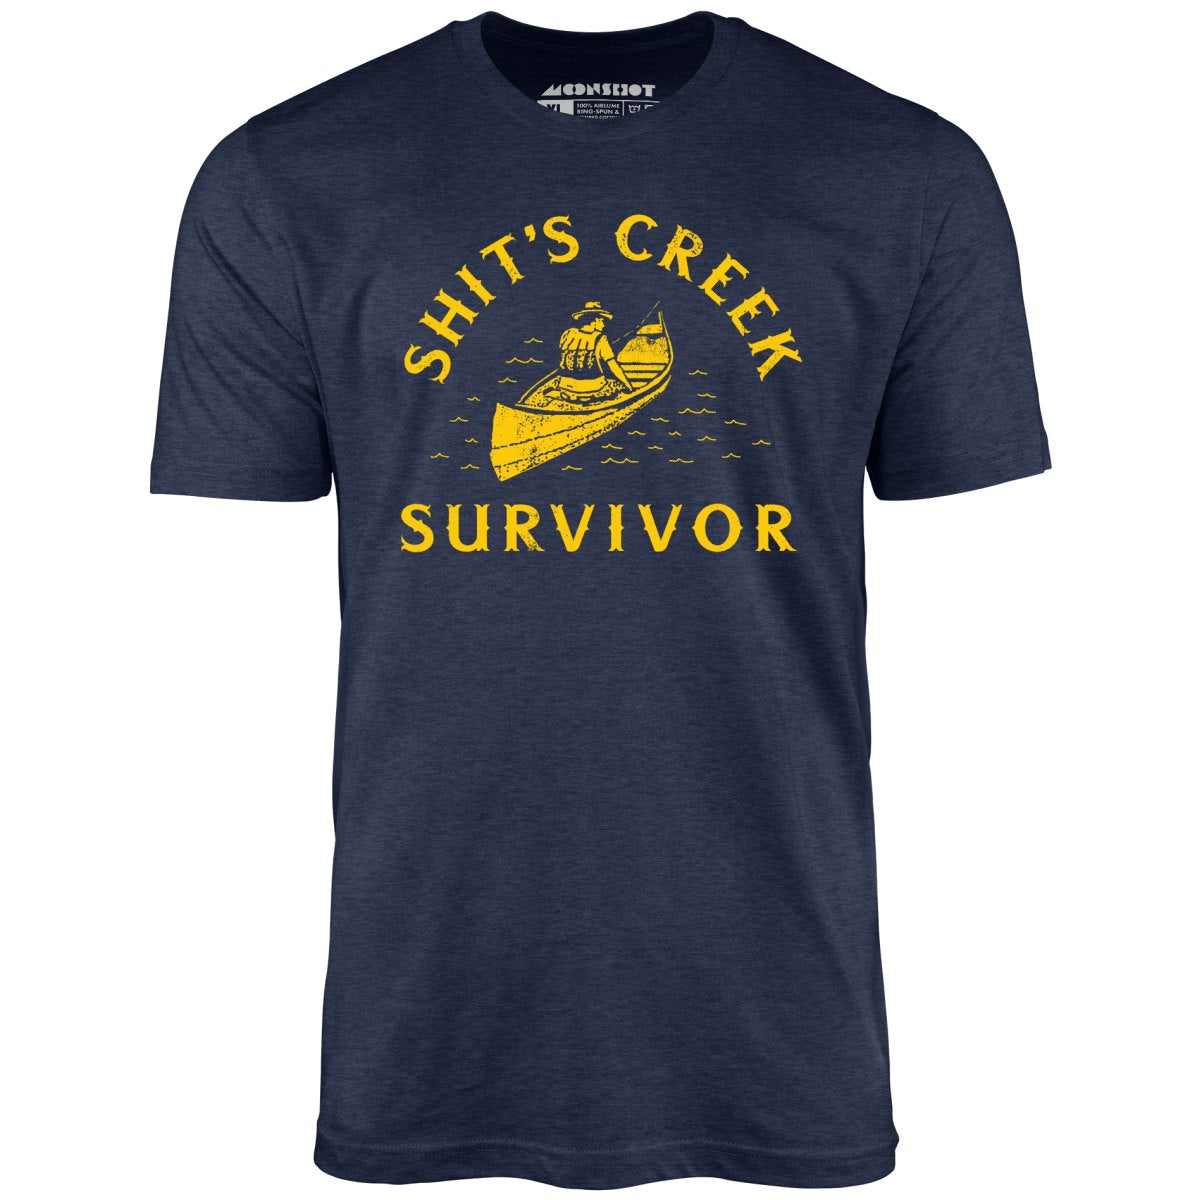 Shit's Creek Survivor - Unisex T-Shirt